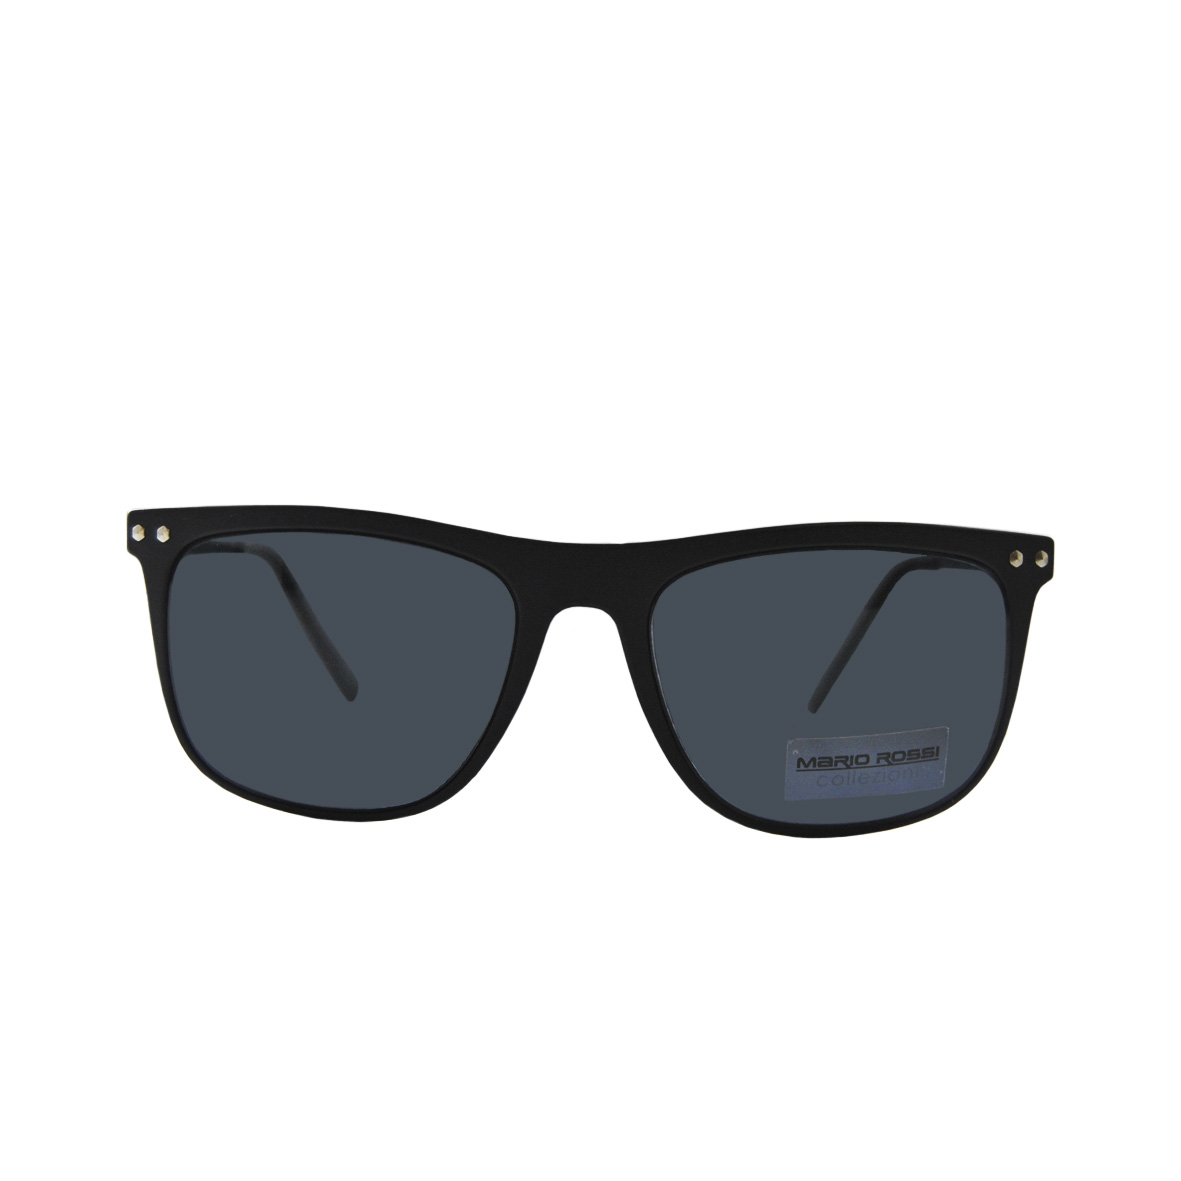 Солнцезащитные очки Mario Rossi модель 05 046 18                             -65%